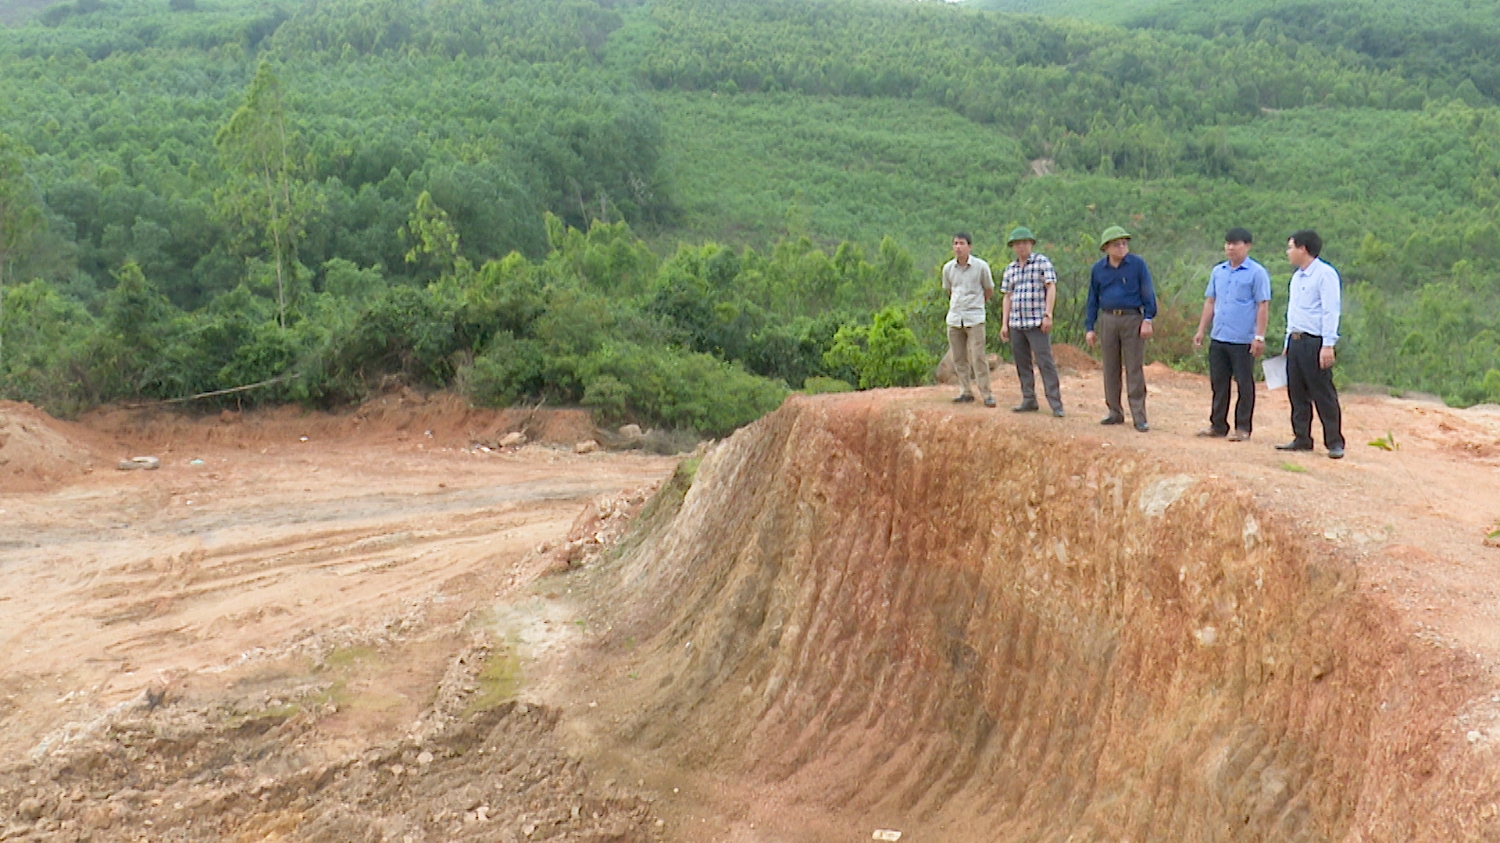 Đồng chí Đoàn Minh Thọ – Phó Bí thư Thị ủy Chủ tịch UBND thị xã và các đồng chí trong đoàn công tác đã đi kiểm tra khu vực đất san lấp làm vật liệu xây dựng tại đồng Hòa